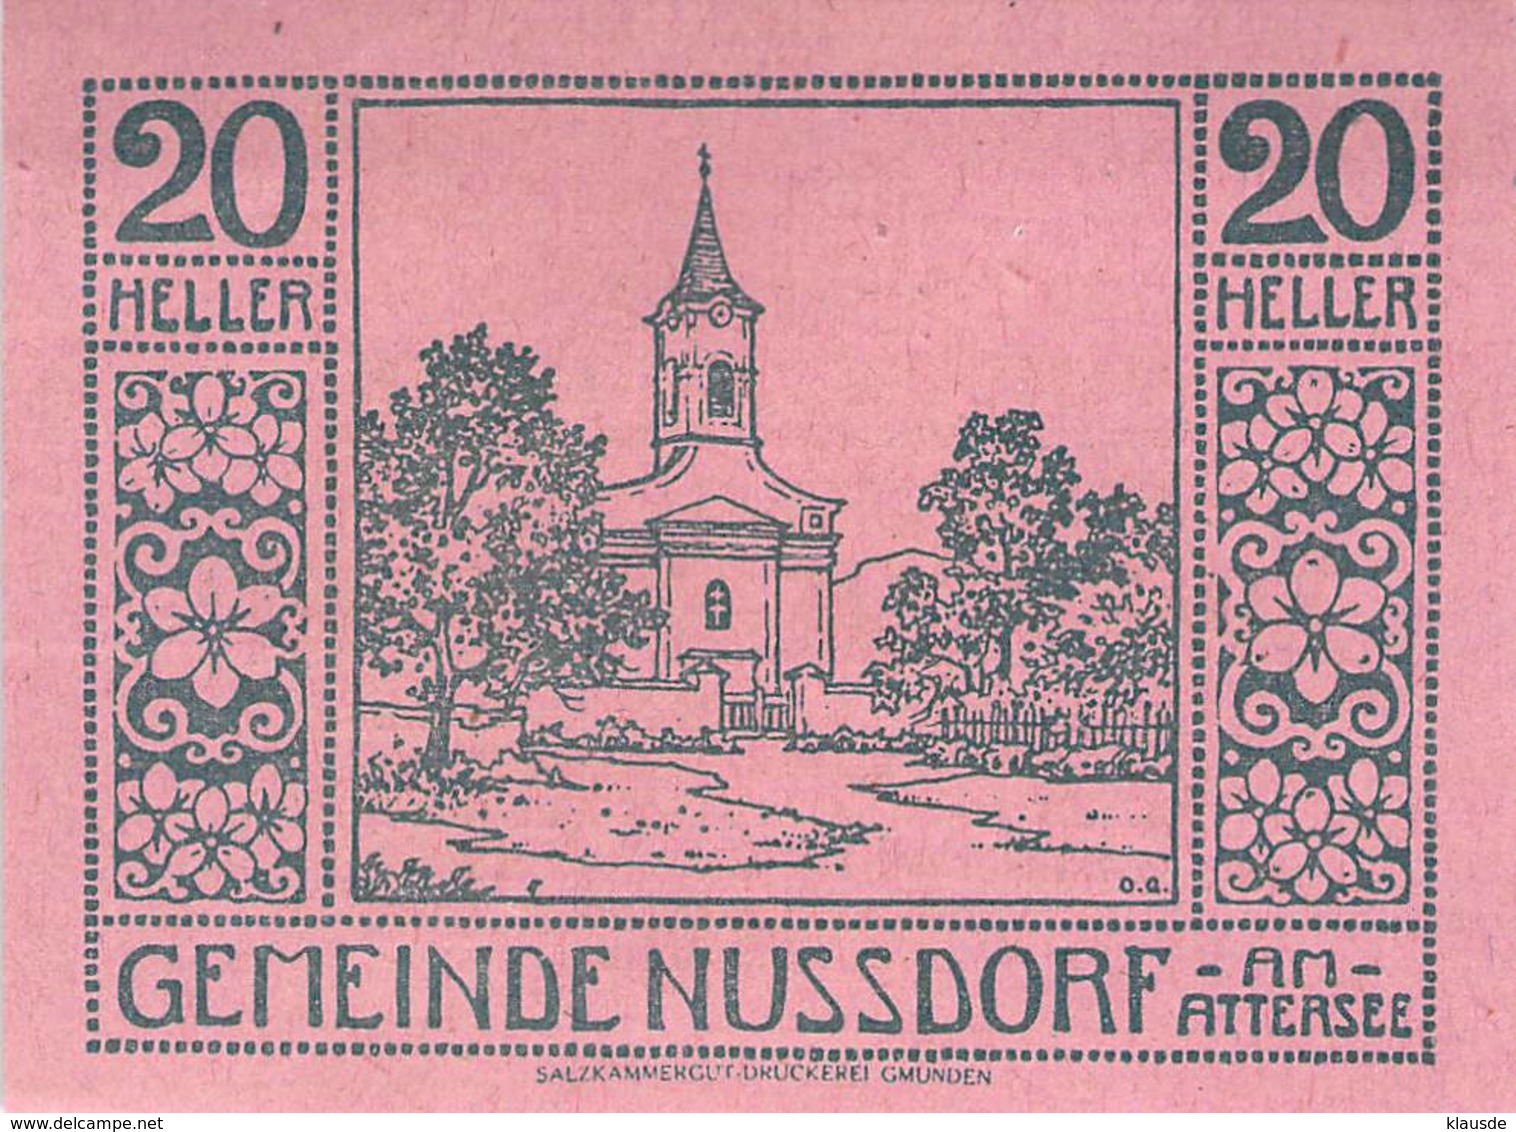 Notgeld 20 Heller Nussdorf Attersee (Oberösterreich) Österreich UNC (I) - Austria